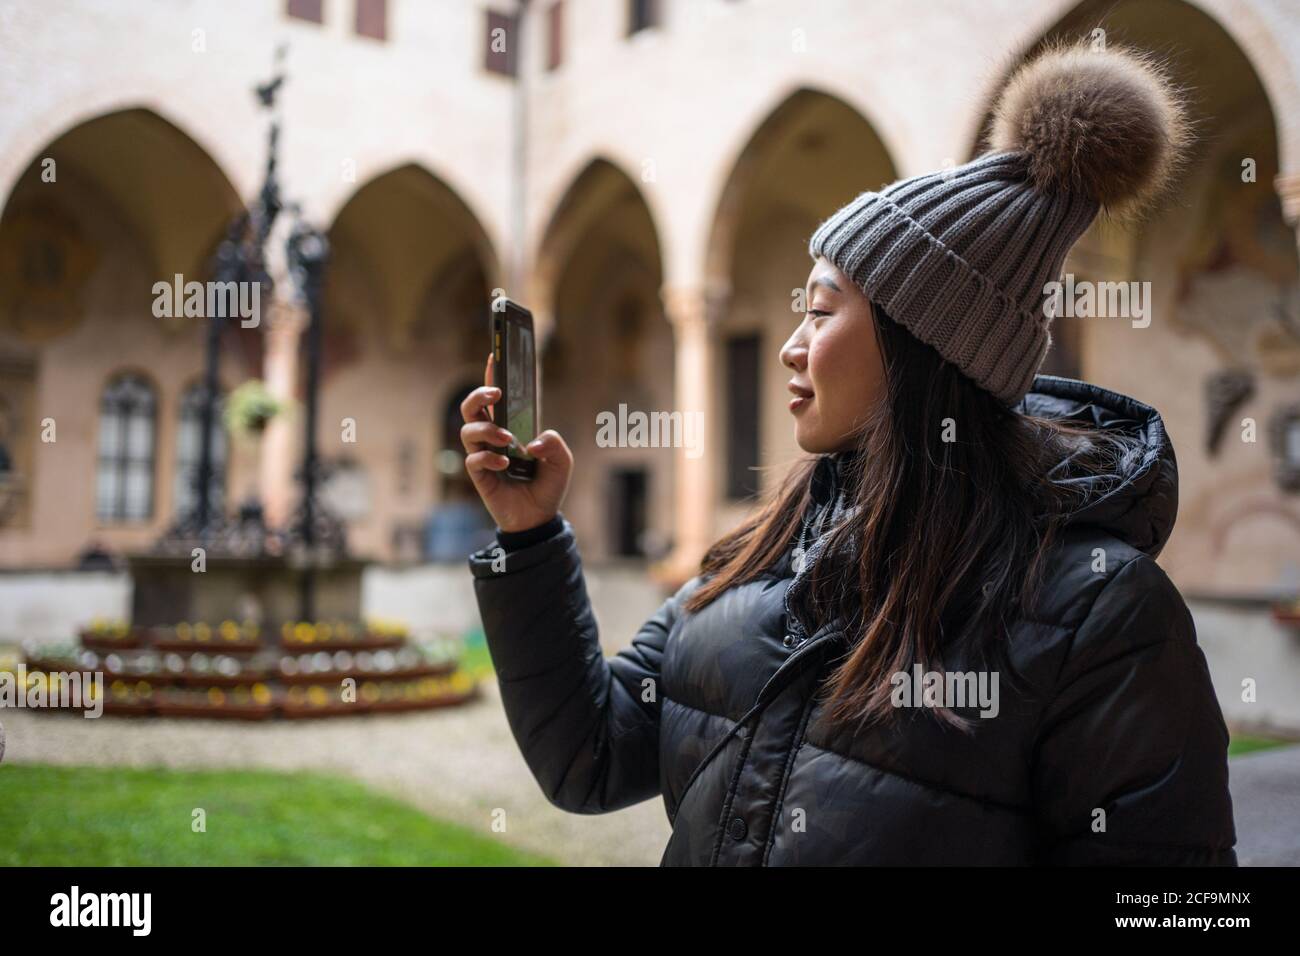 Seitenansicht der asiatischen weiblichen Touristen in warmer Kleidung und hat fotografieren auf dem Handy, während Sie die alte Basilika erkunden Von San Antonio in Padova in Italien Stockfoto